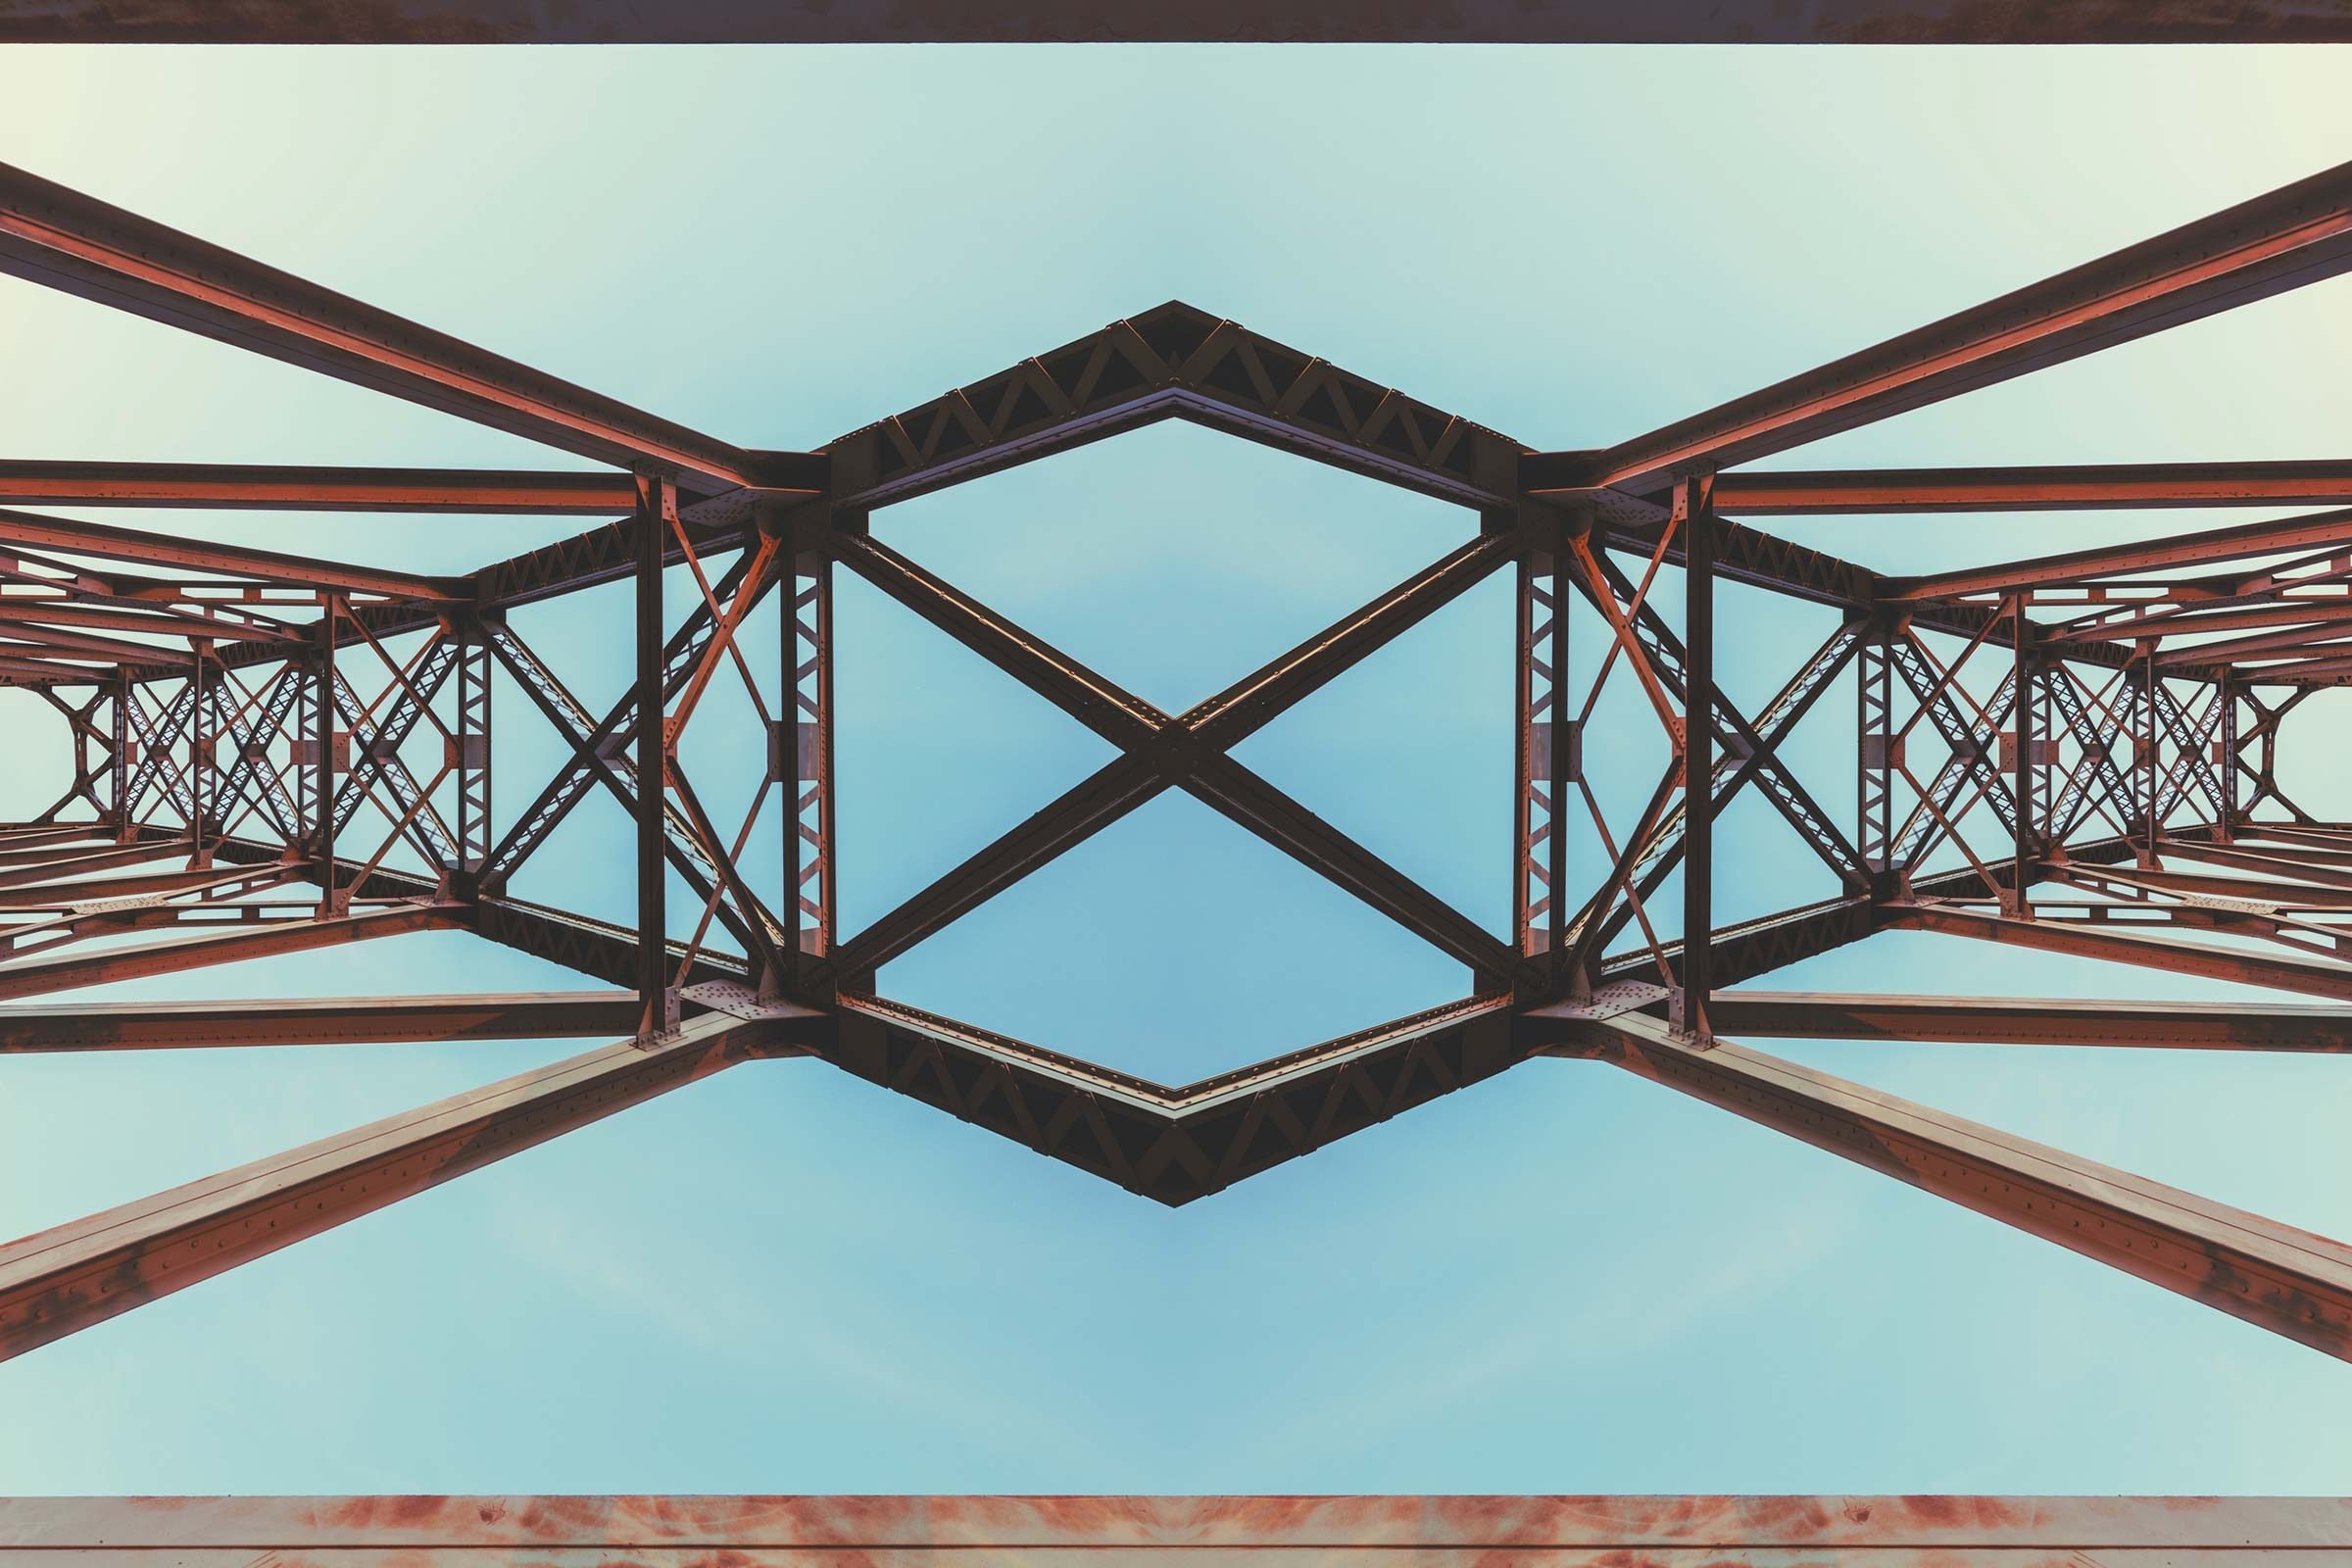 Top view of a symmetrical bridge.